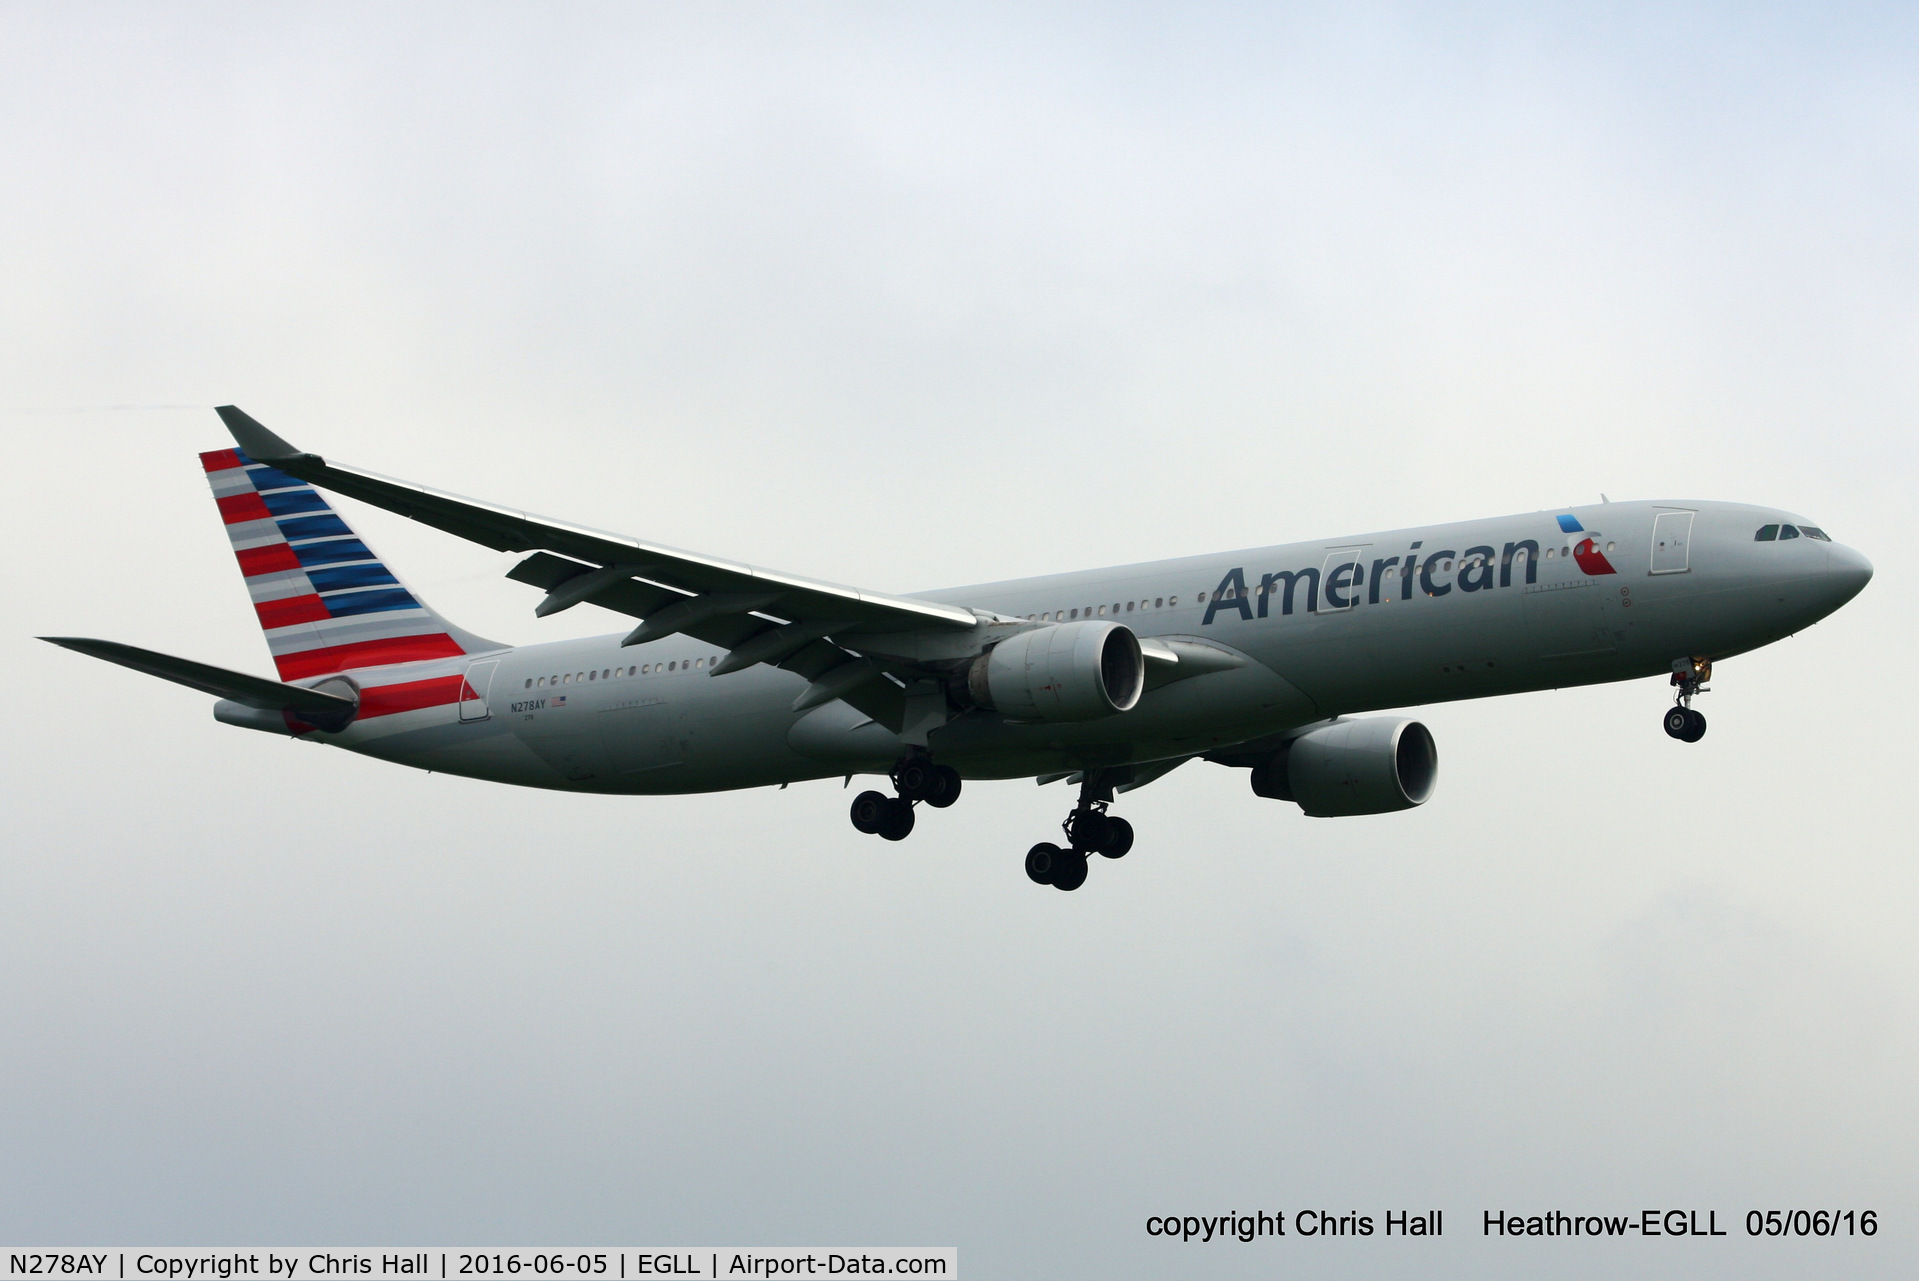 N278AY, 2001 Airbus A330-323 C/N 0388, American Airlines